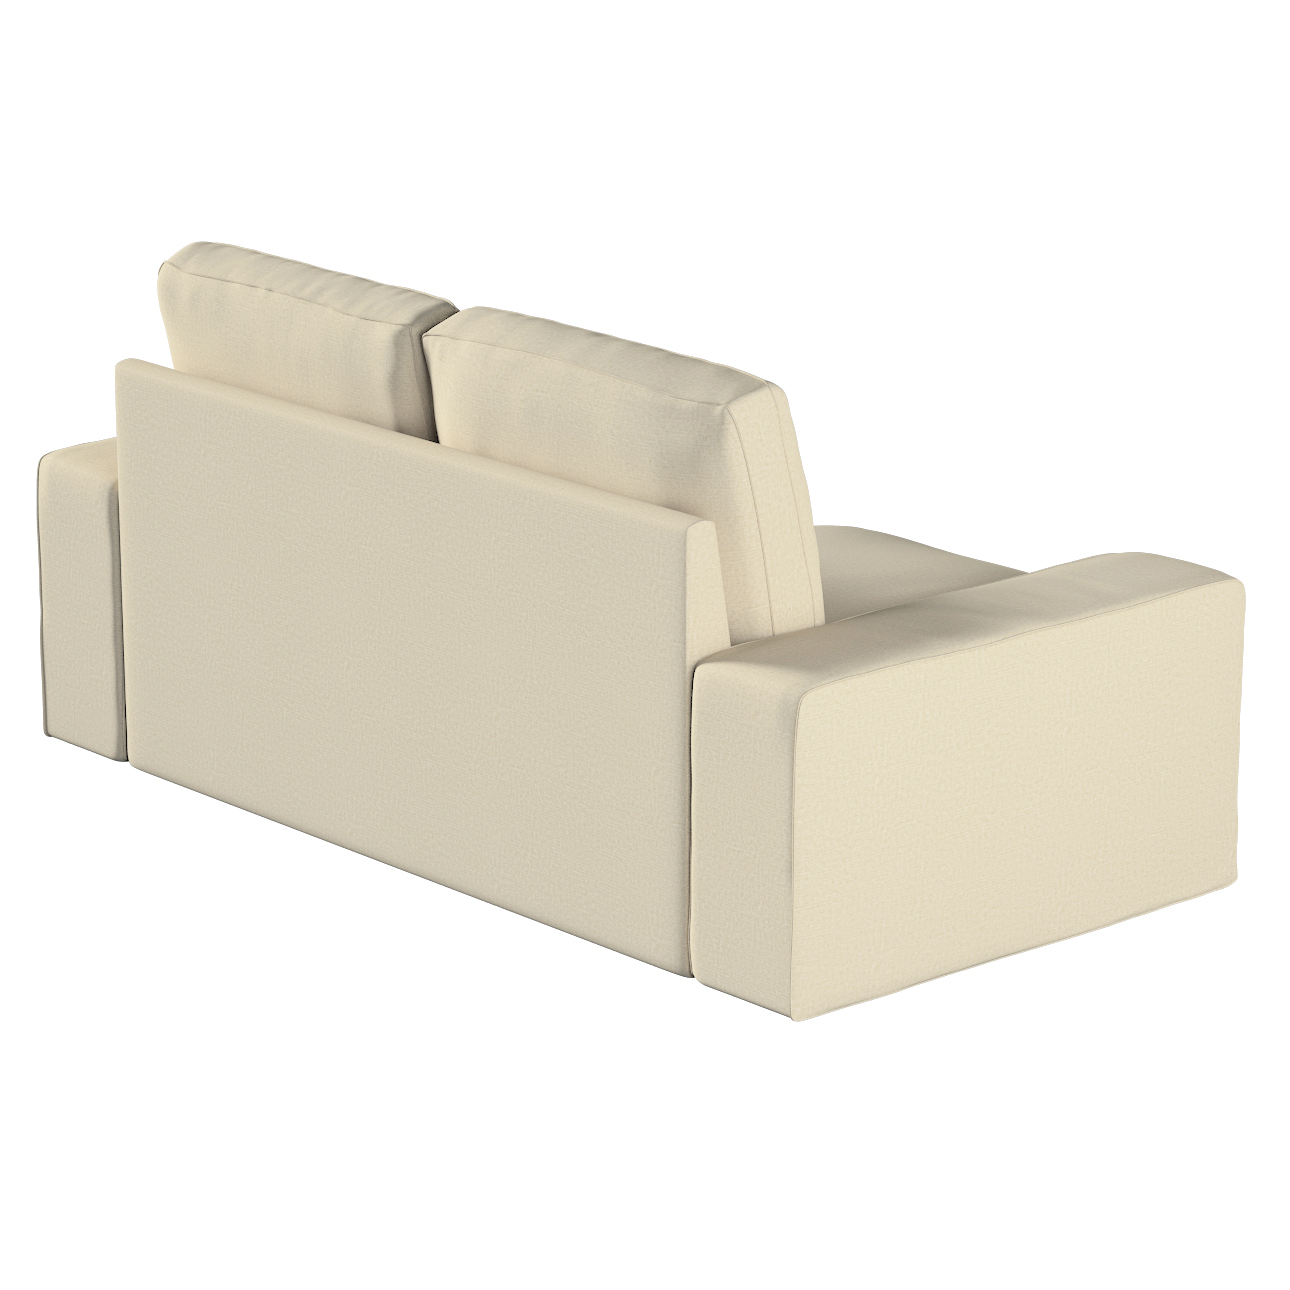 Bezug für Kivik 2-Sitzer Sofa, ecru, Bezug für Sofa Kivik 2-Sitzer, Chenill günstig online kaufen